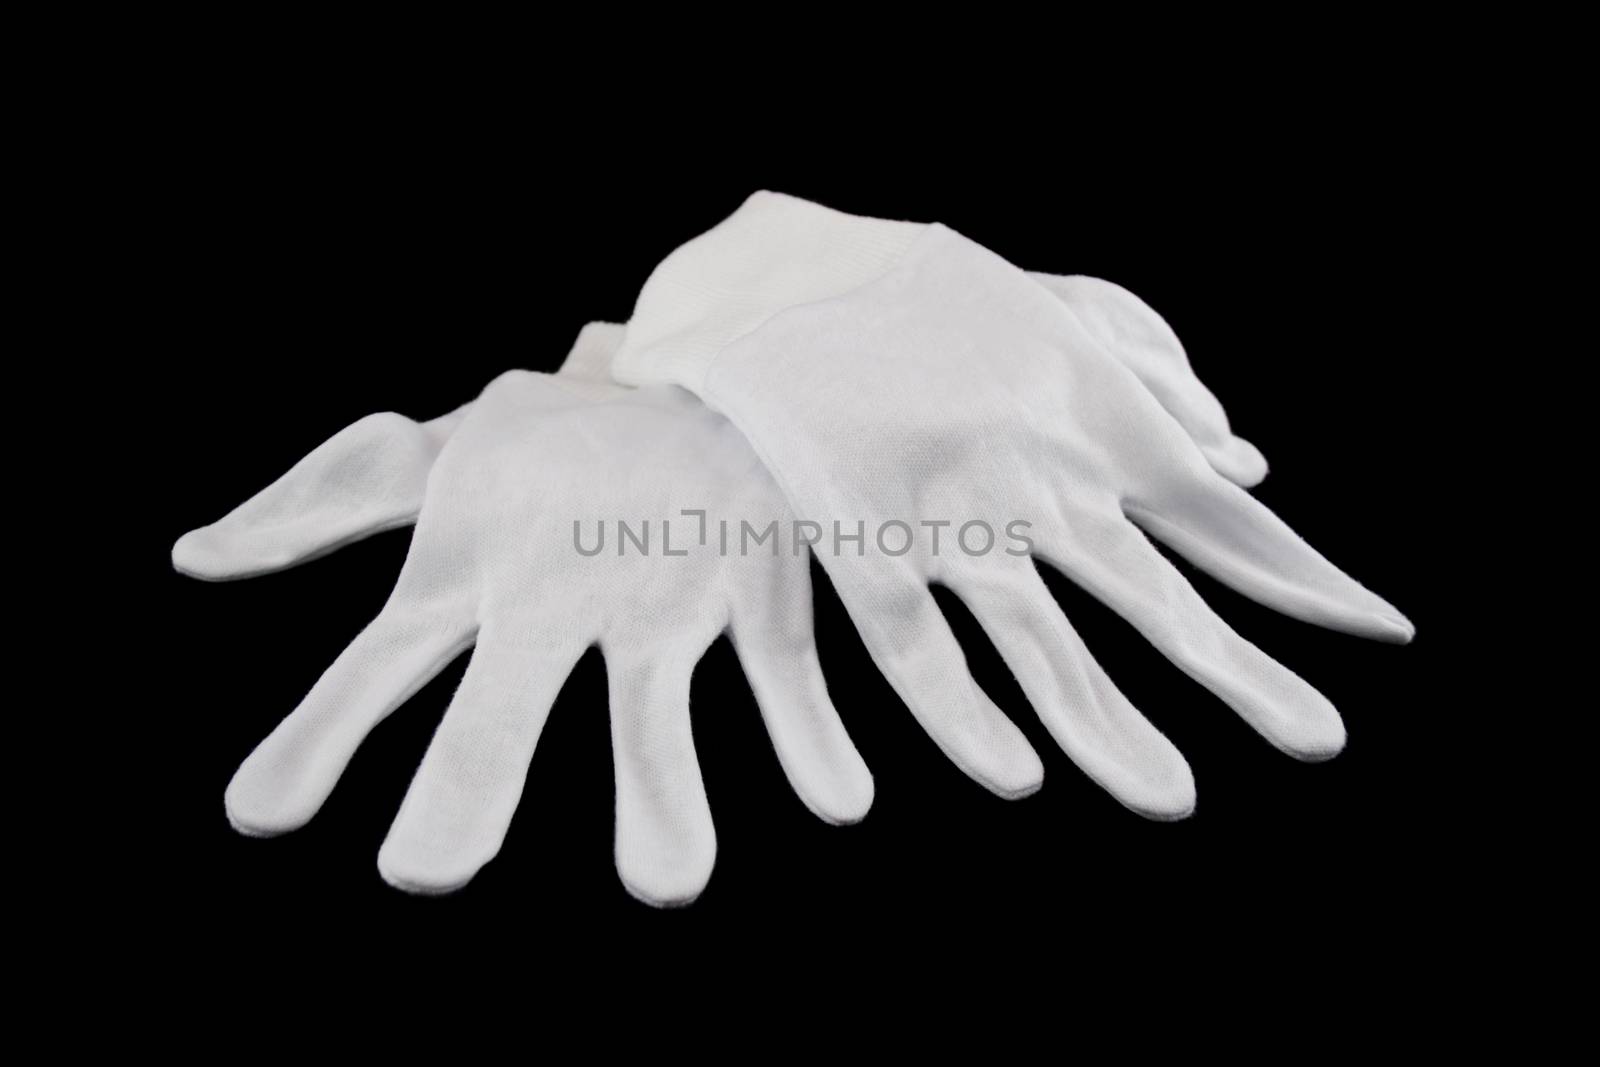 White Gloves by jabiru